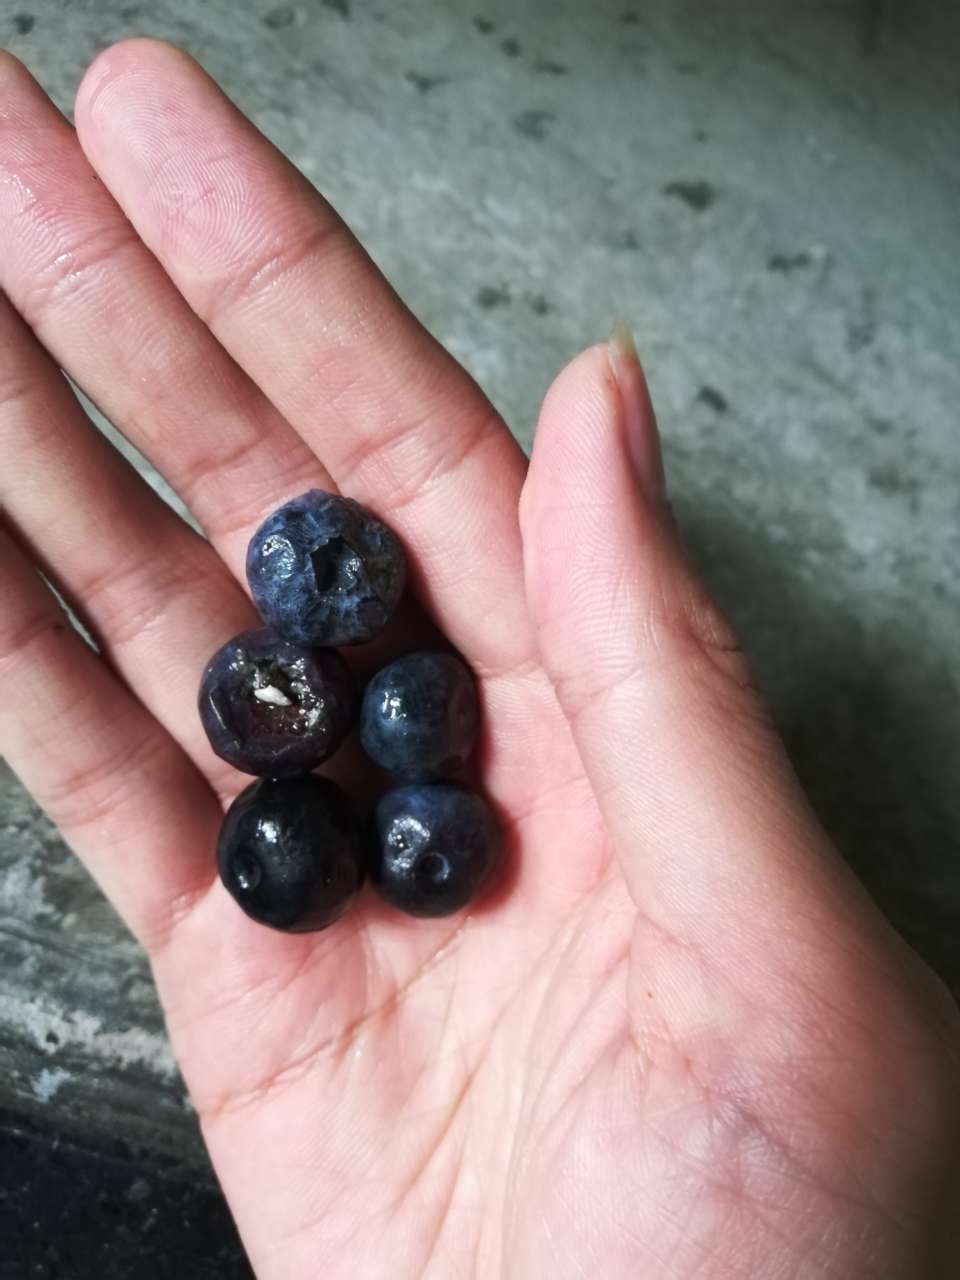 蓝莓里面有籽像虫子图片